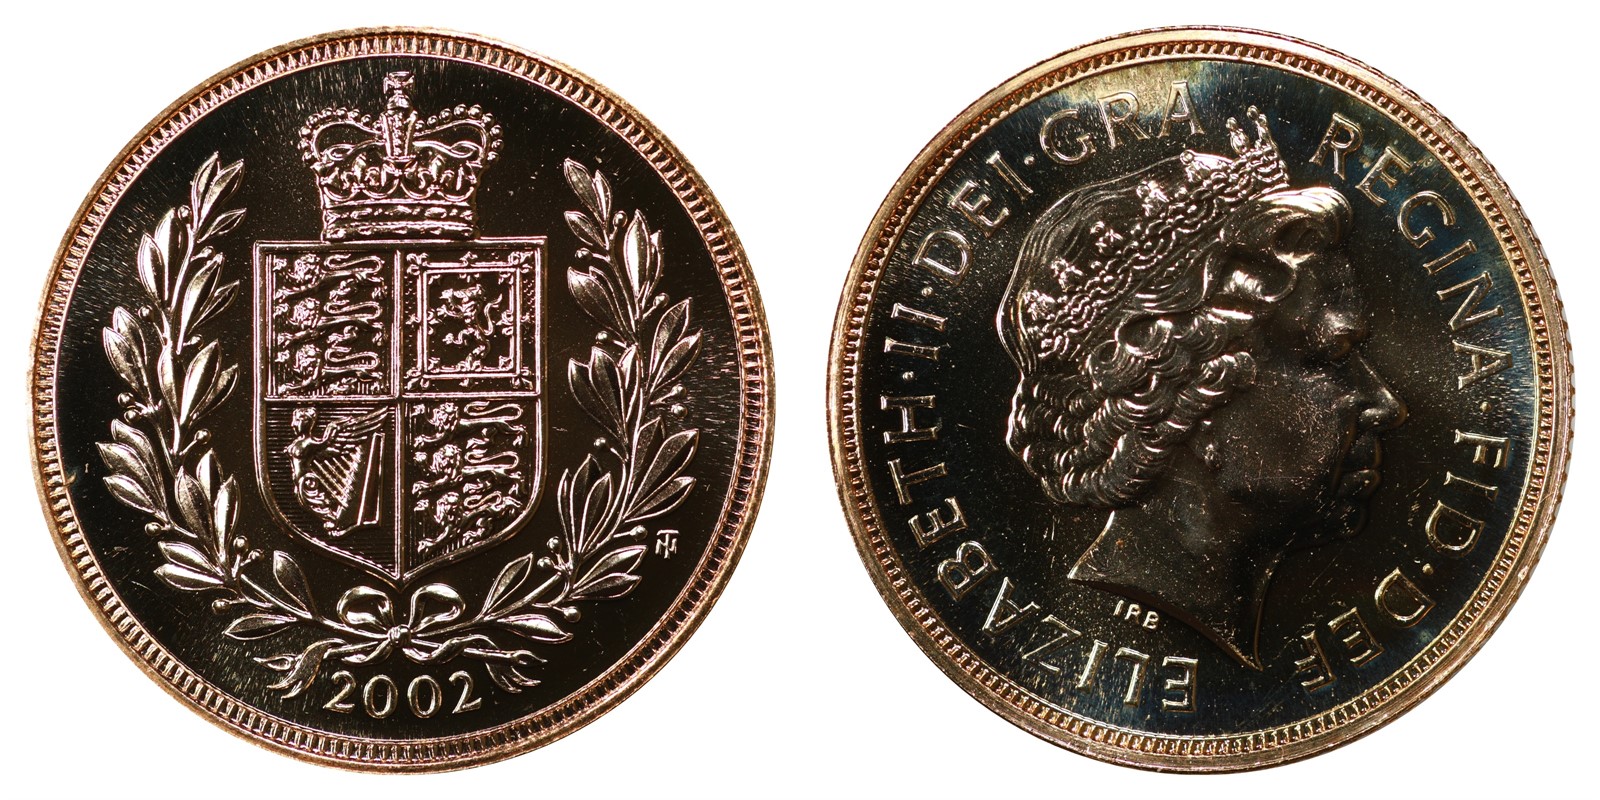 England - Elizabeth II - Sovereign 2002 Golden Jubilee - UNC *